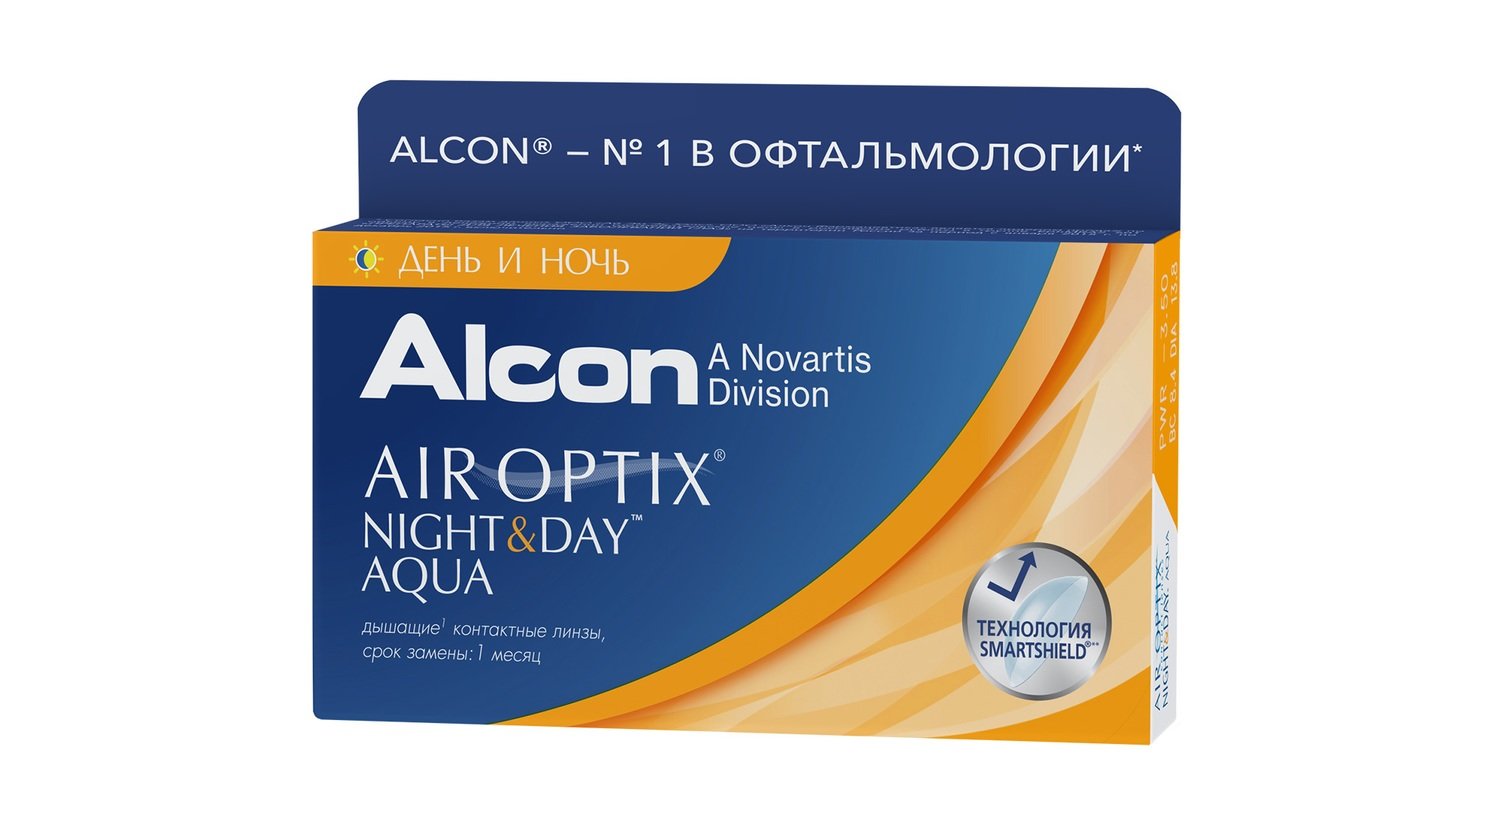 ALCON AIR OPTIX Aqua Night & Day